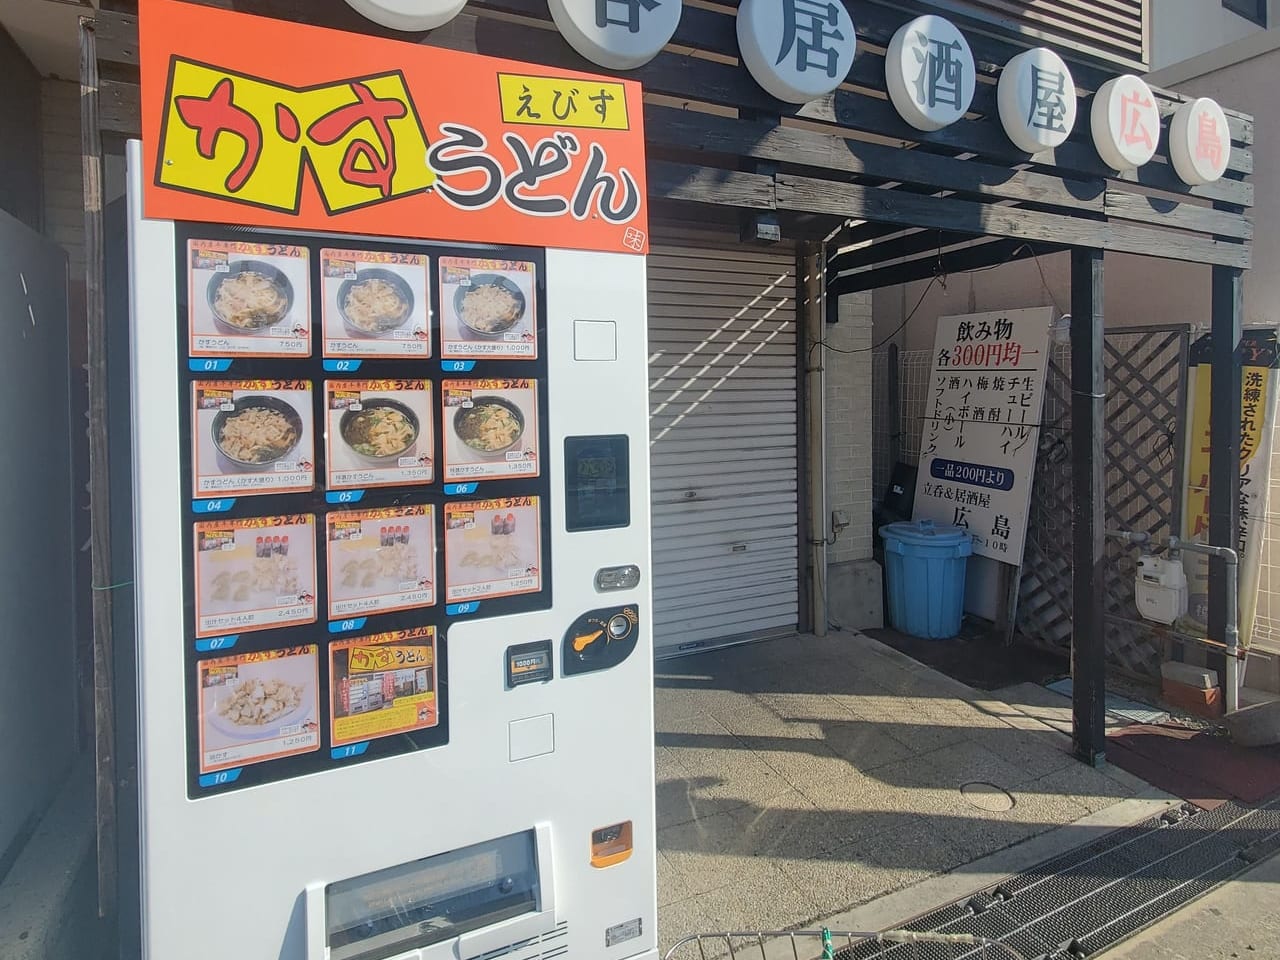 広島前にかすうどん自販機